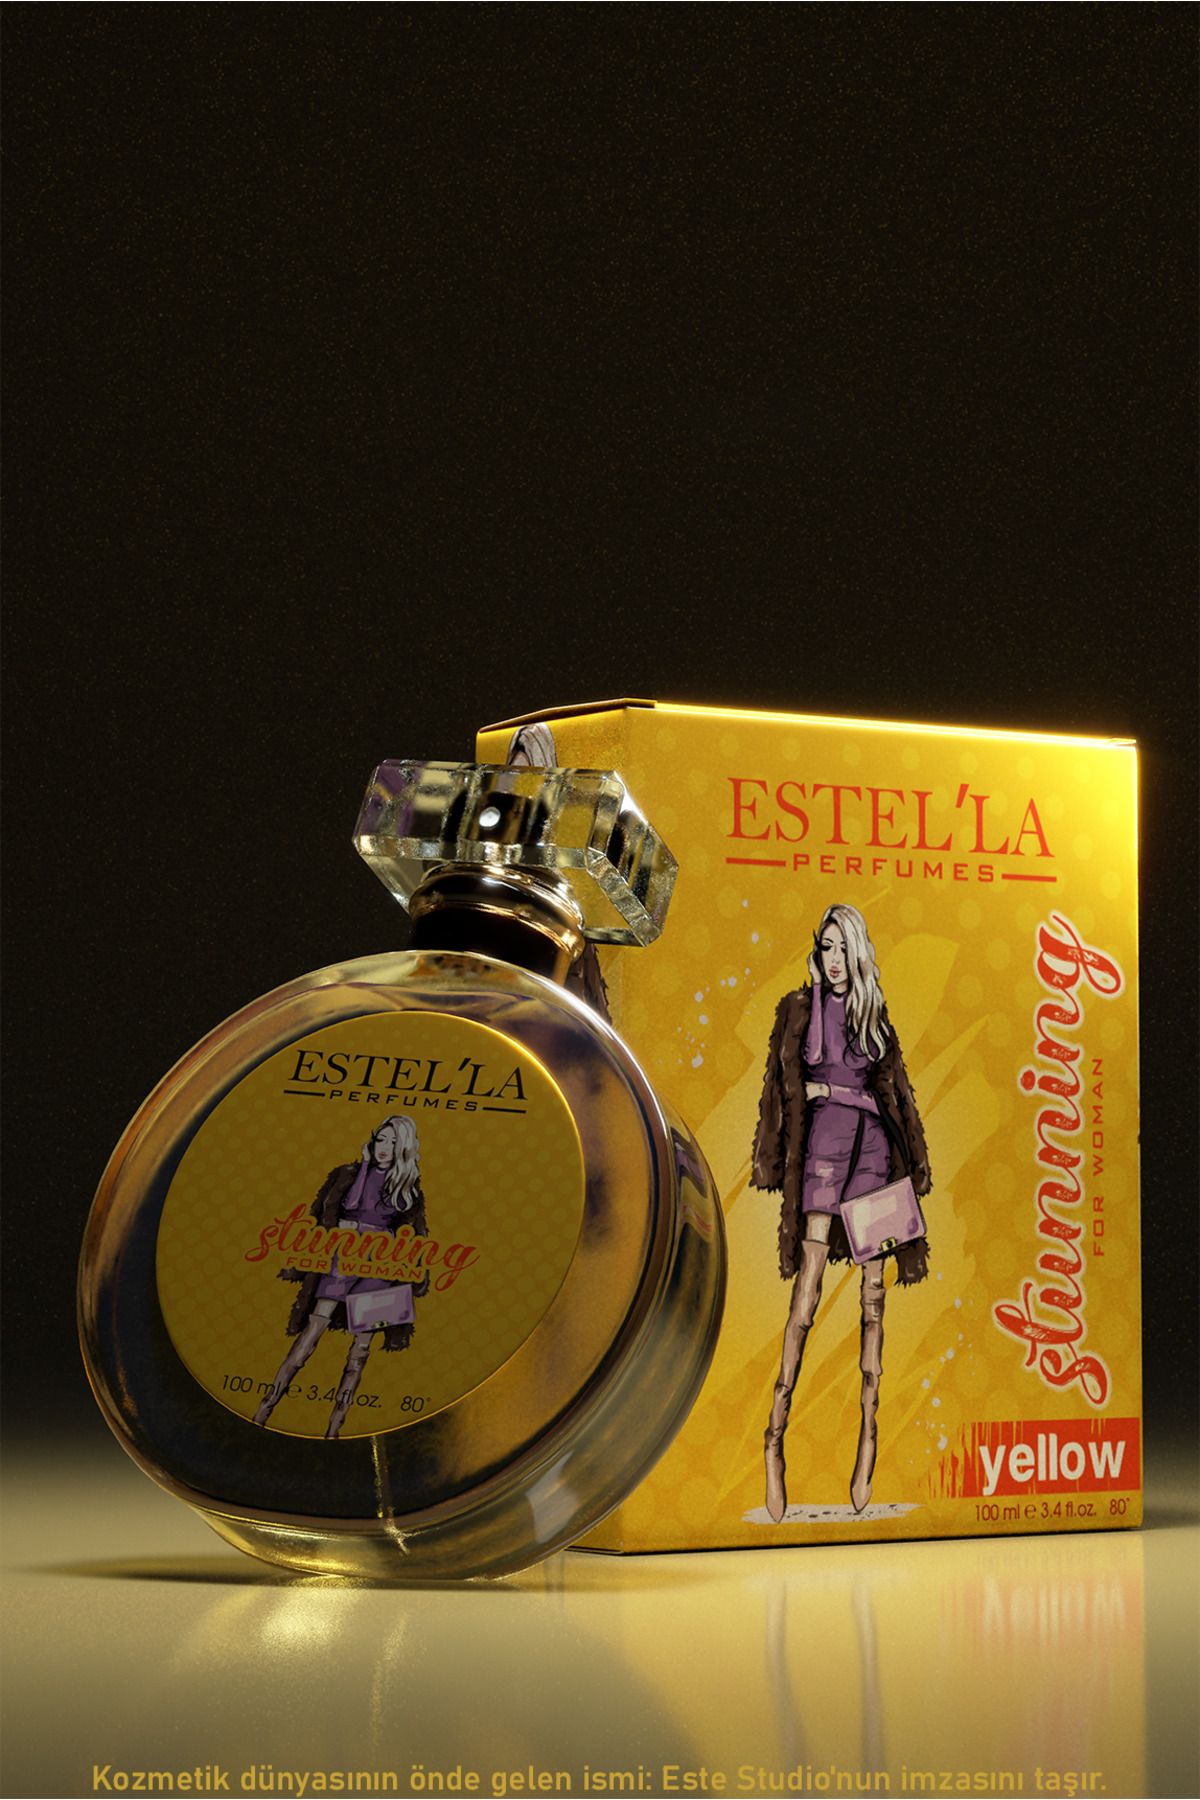 Estella 100 ml Stunning Yellow Kadın Parfümü ile Enerji Dolu Bir Kokunun Büyüsüne Kapılın